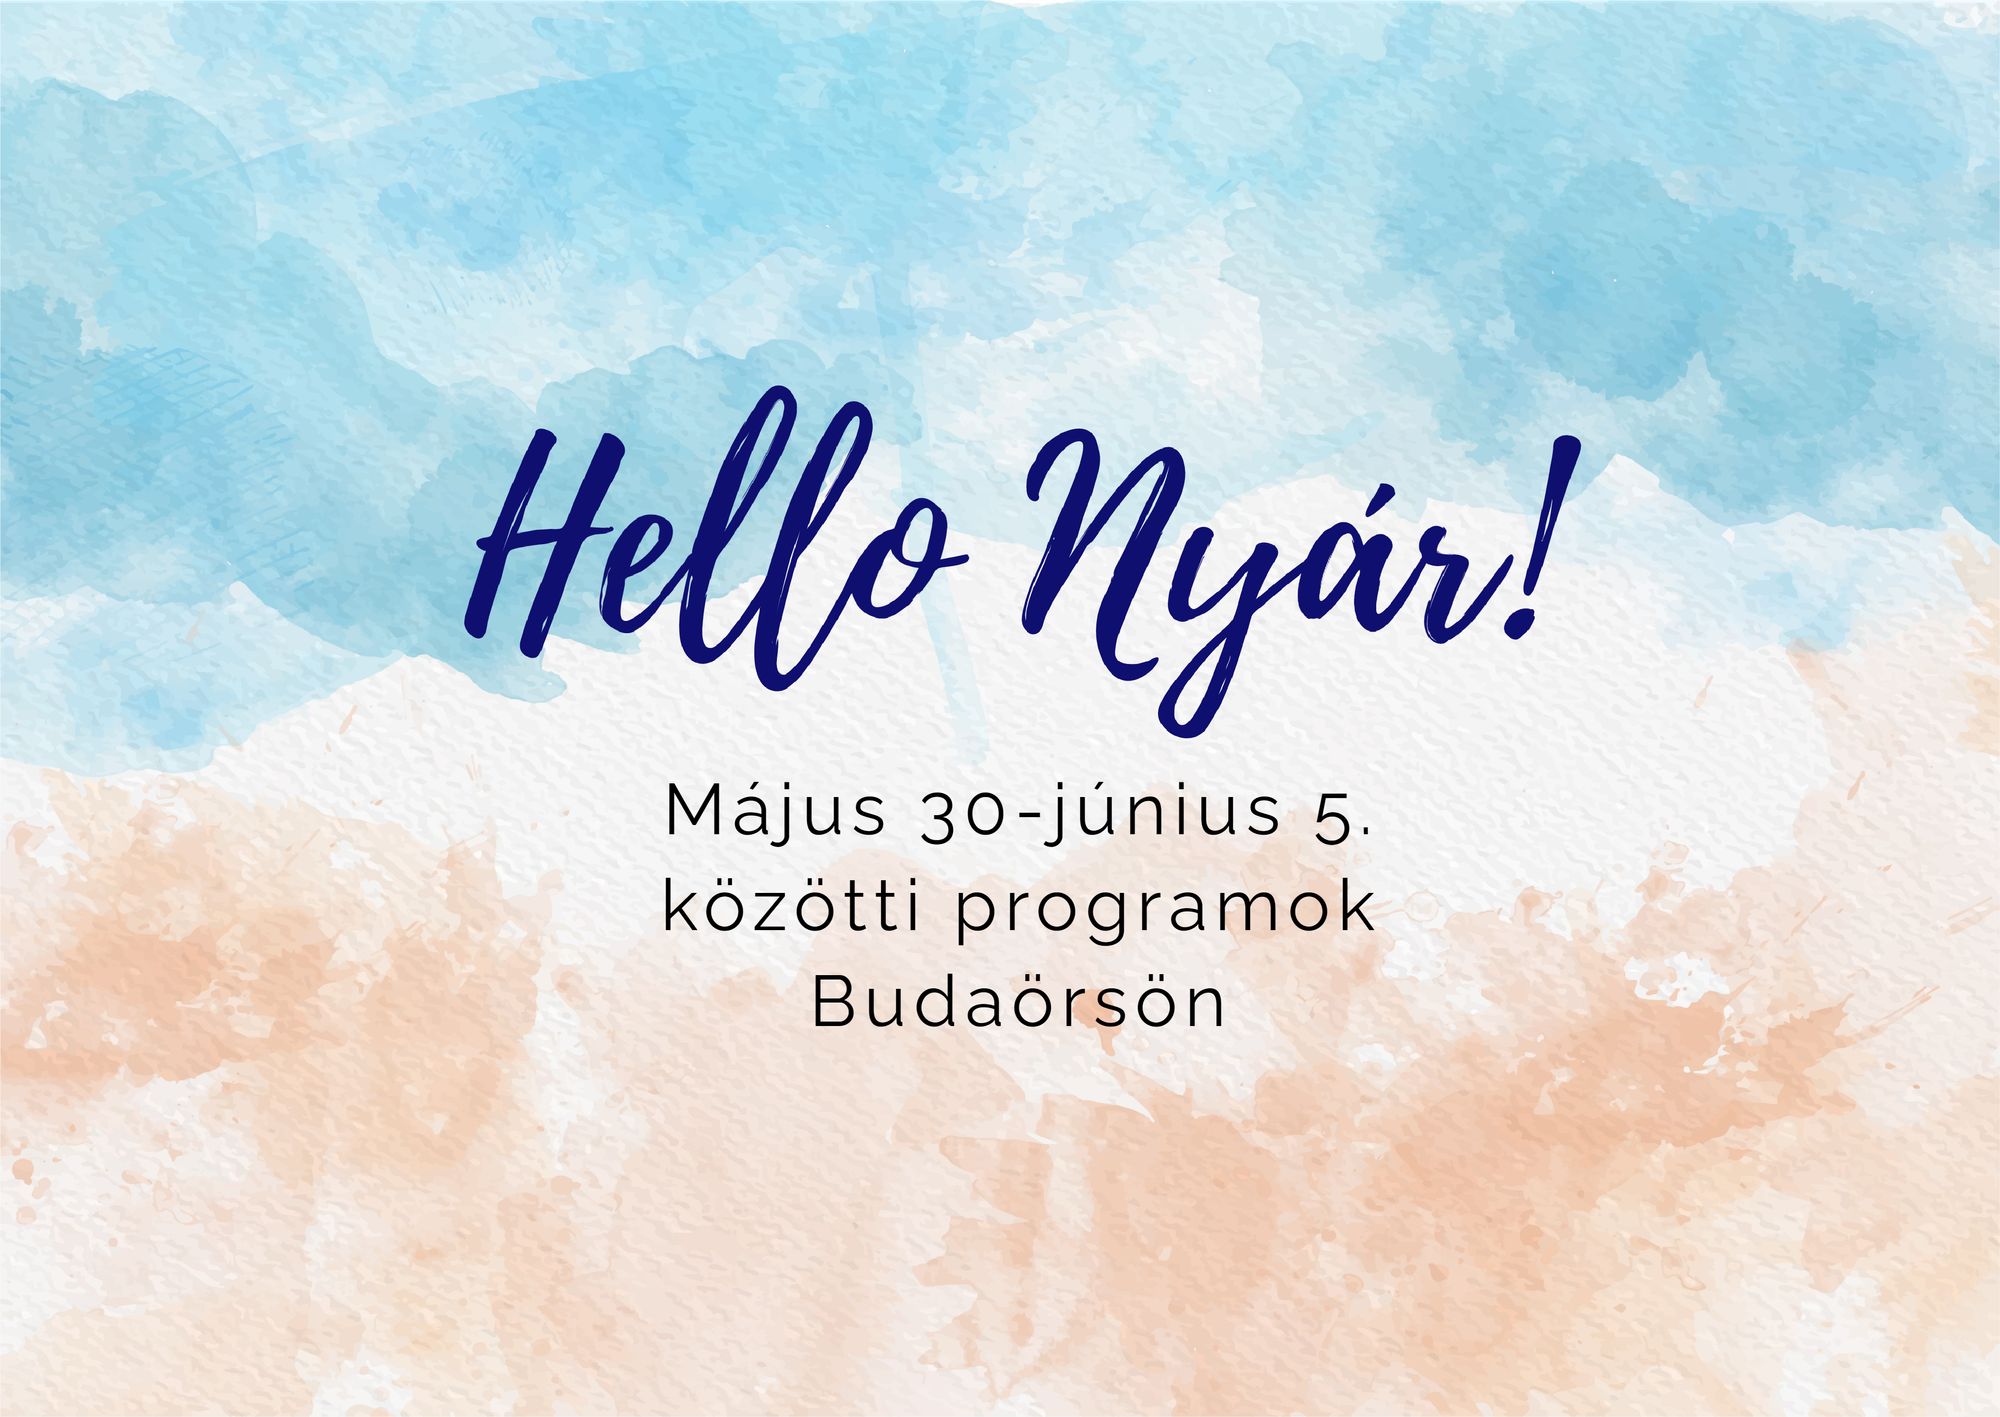 Május 30-június 5. közötti programok Budaörsön